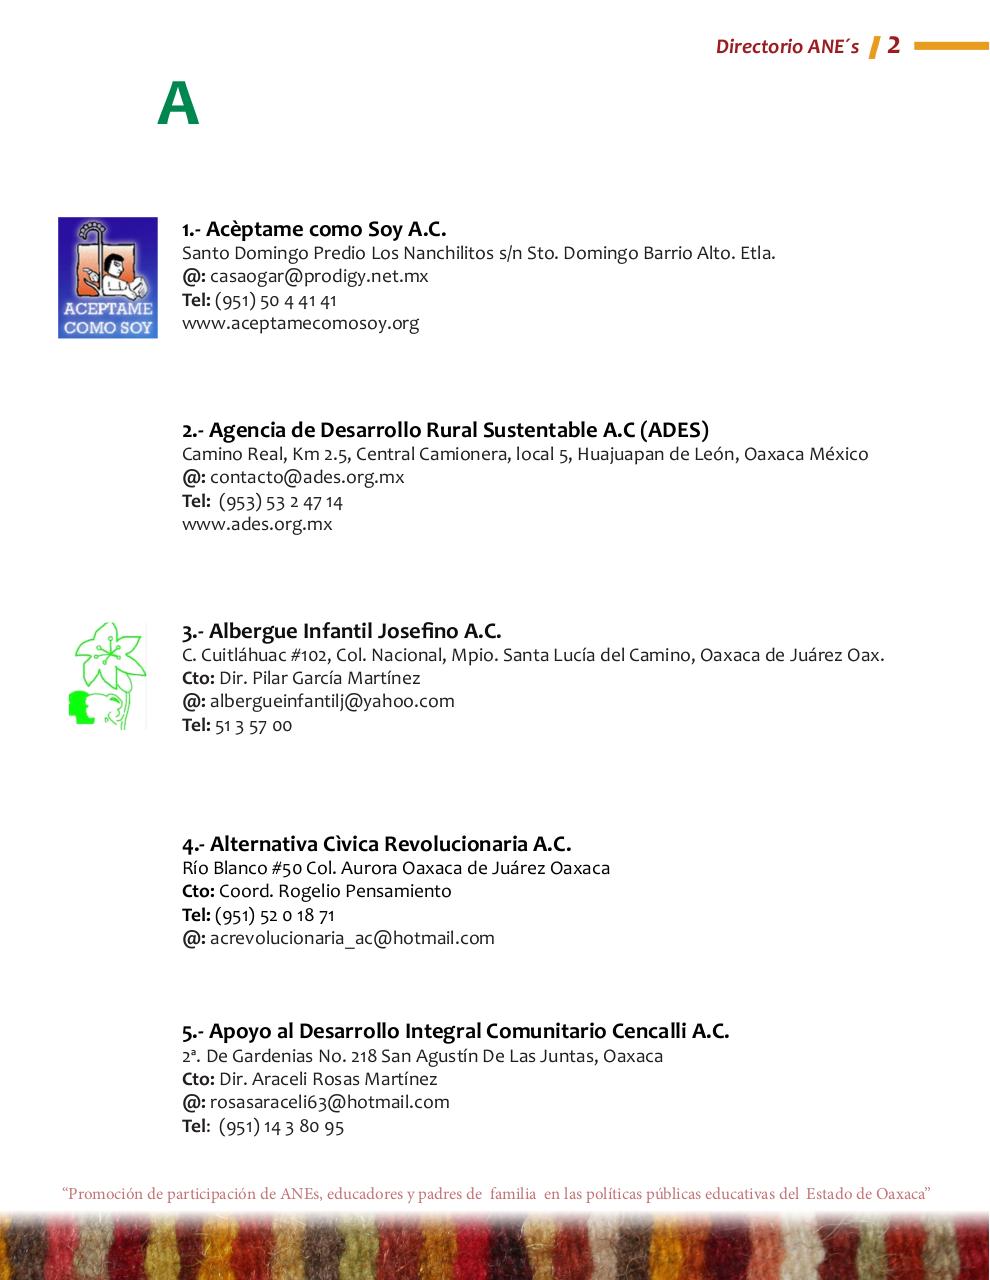 Vista previa del archivo PDF directorio-anes.pdf